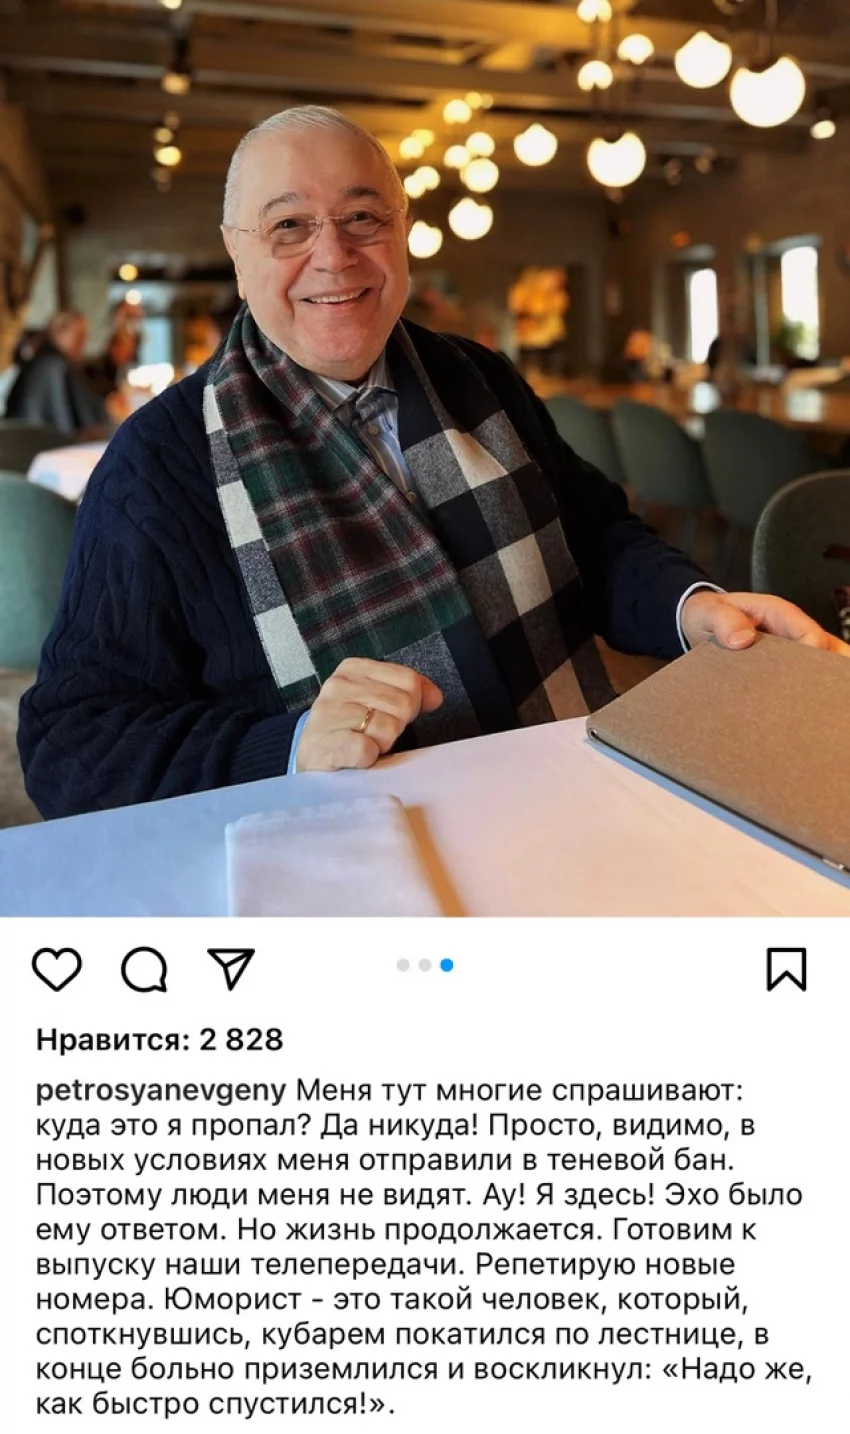 Меня никто не видит: Евгений Петросян рассказал, почему пропал из социальных сетей